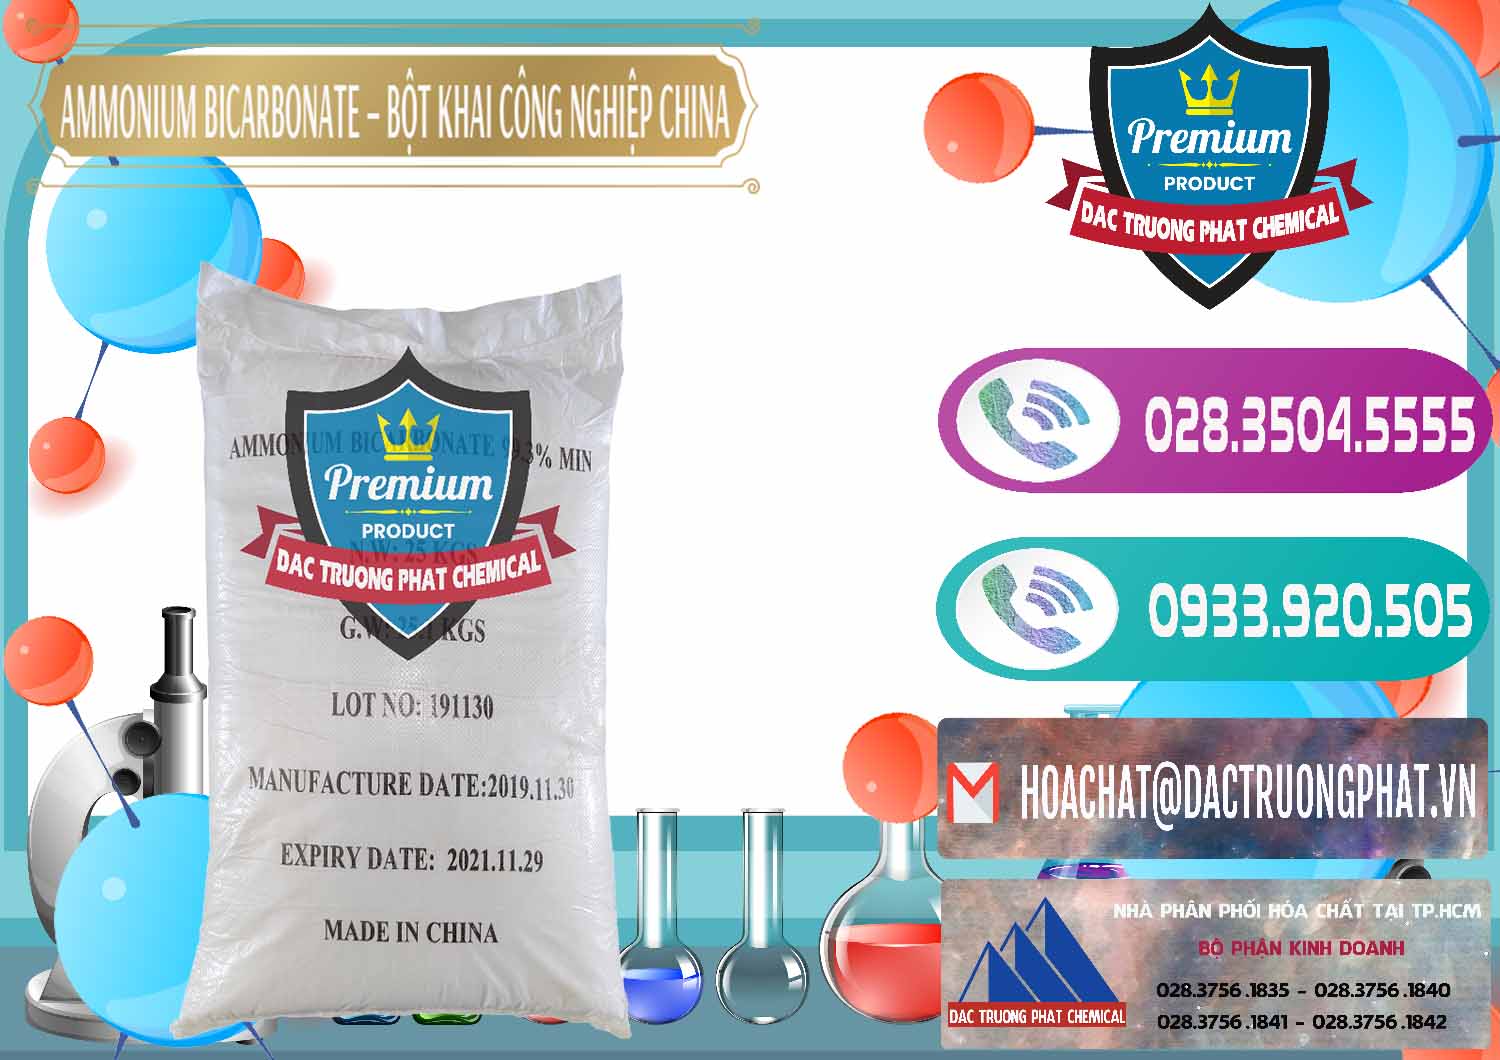 Công ty chuyên kinh doanh và bán Ammonium Bicarbonate – Bột Khai Công Nghiệp Trung Quốc China - 0020 - Cty chuyên cung cấp _ kinh doanh hóa chất tại TP.HCM - hoachatxulynuoc.com